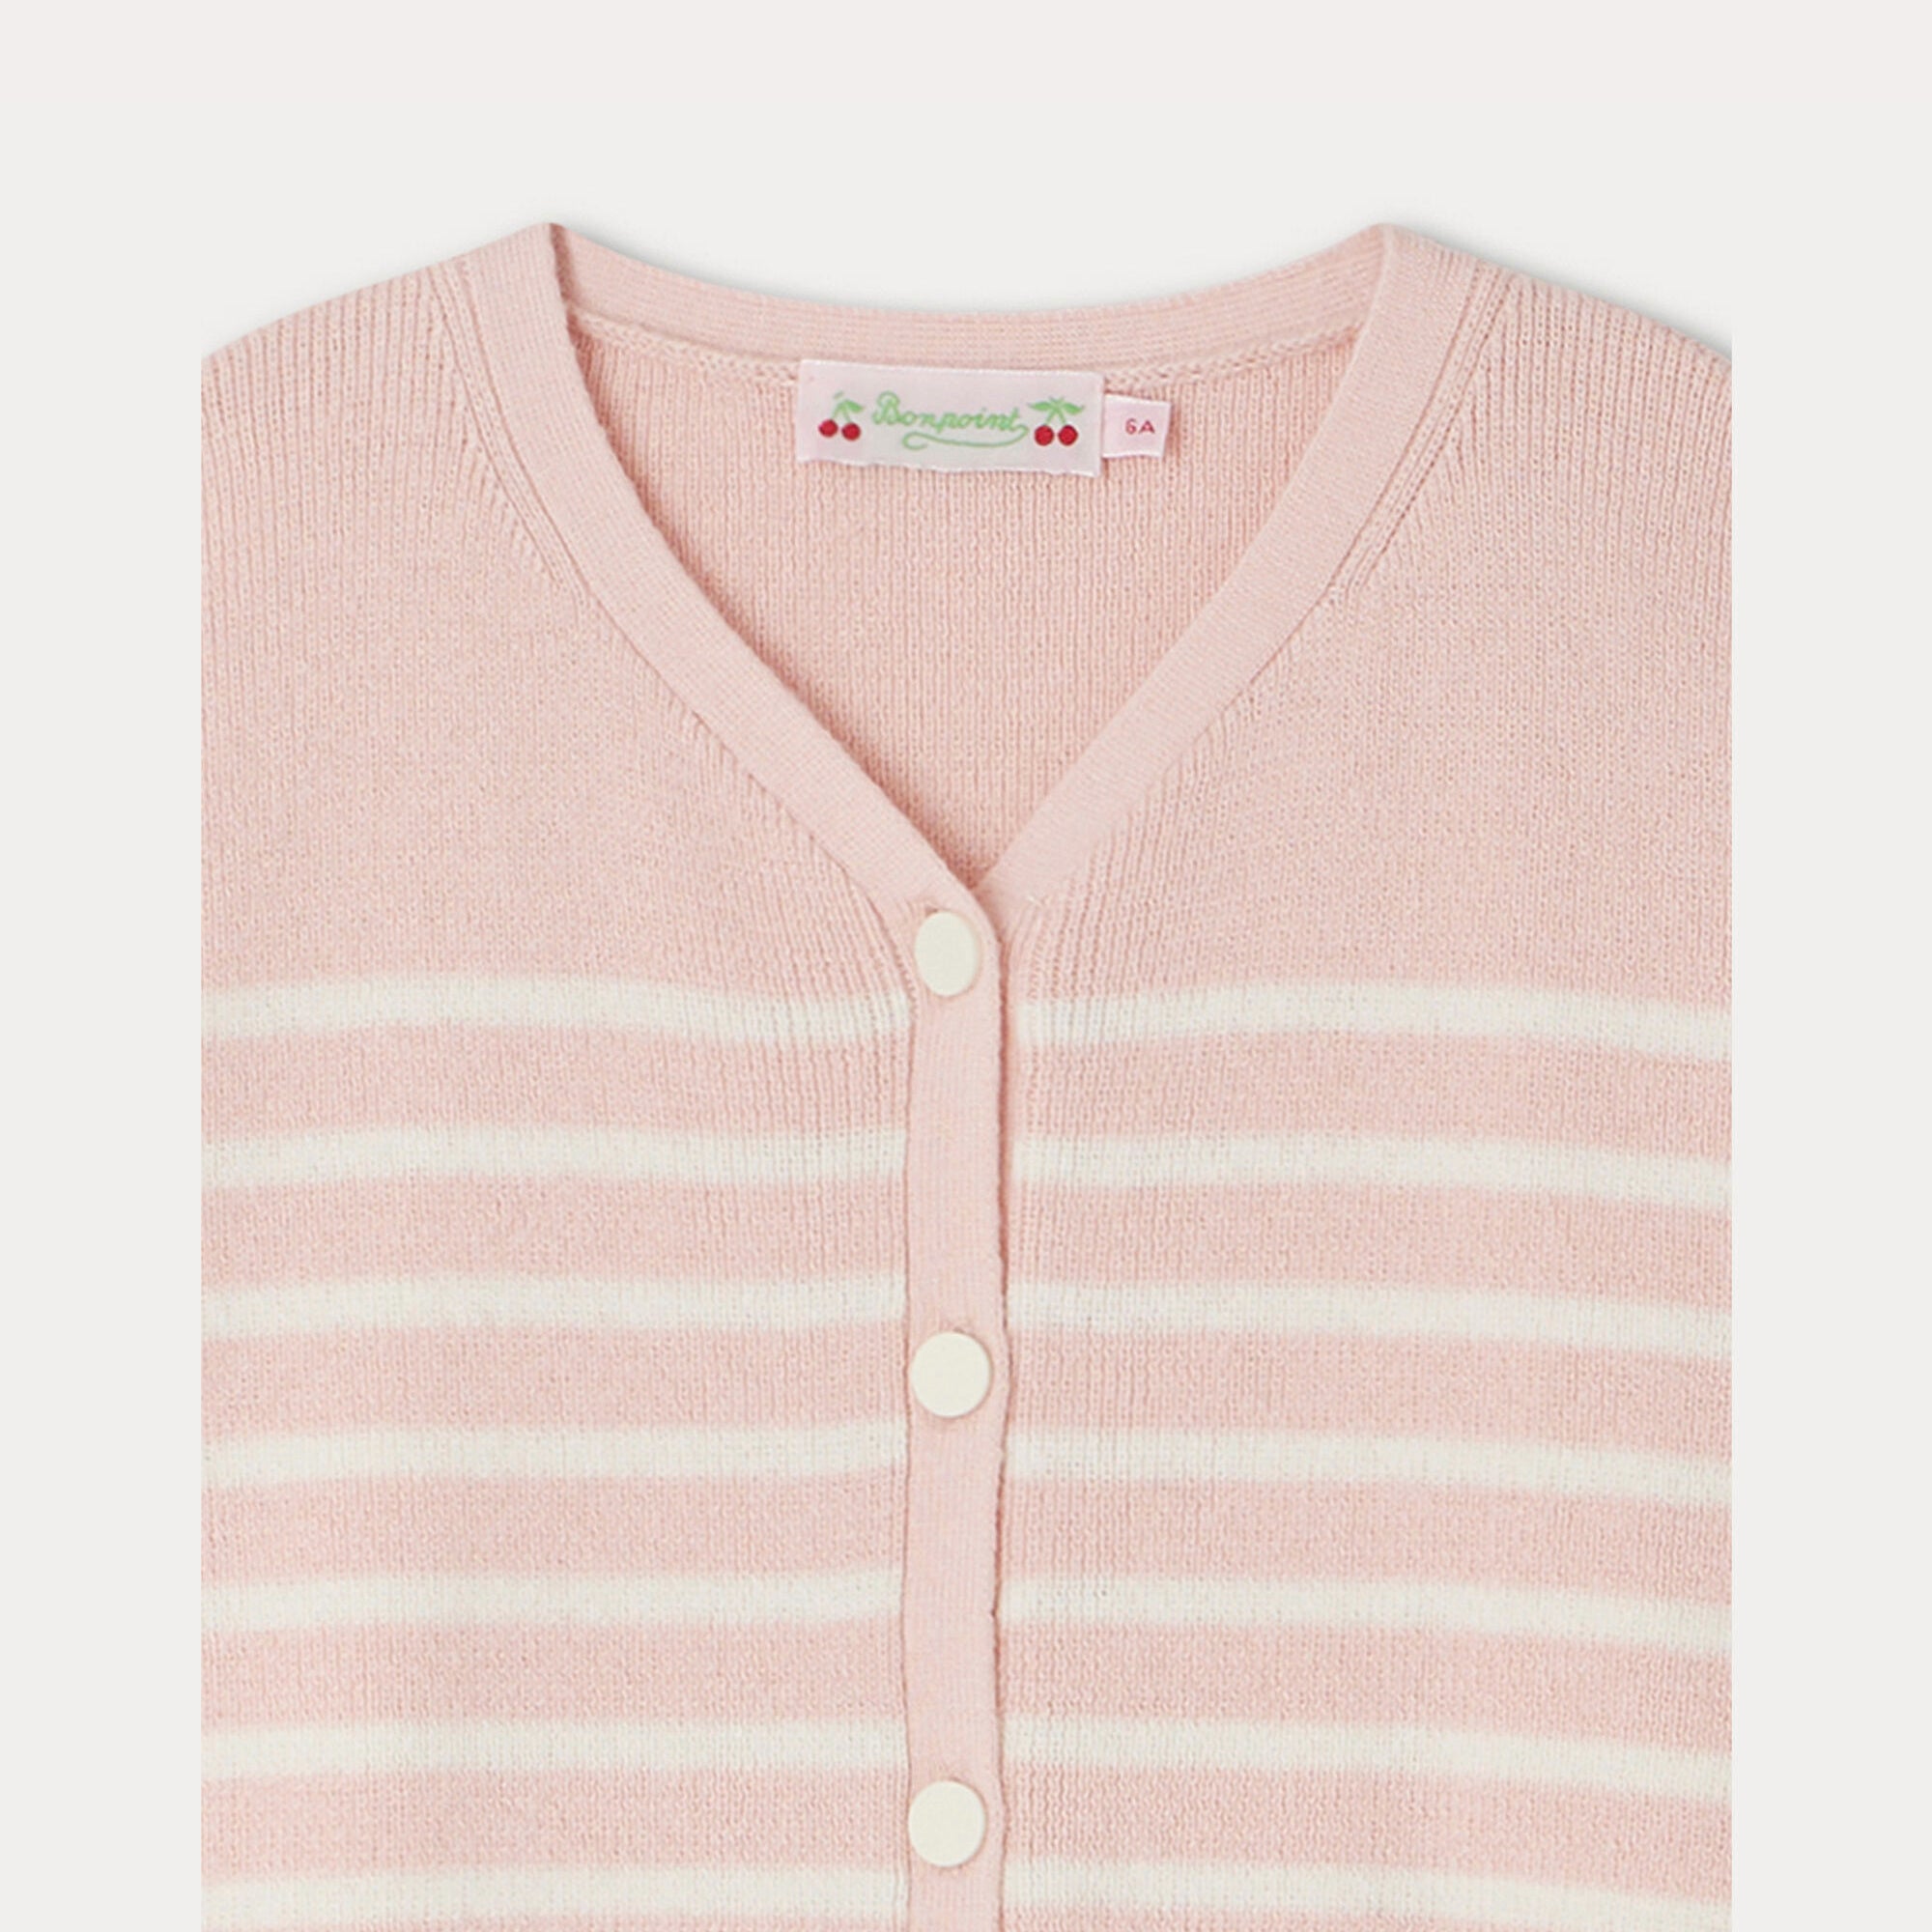 Girls Pink Stripes Cotton Cardigan